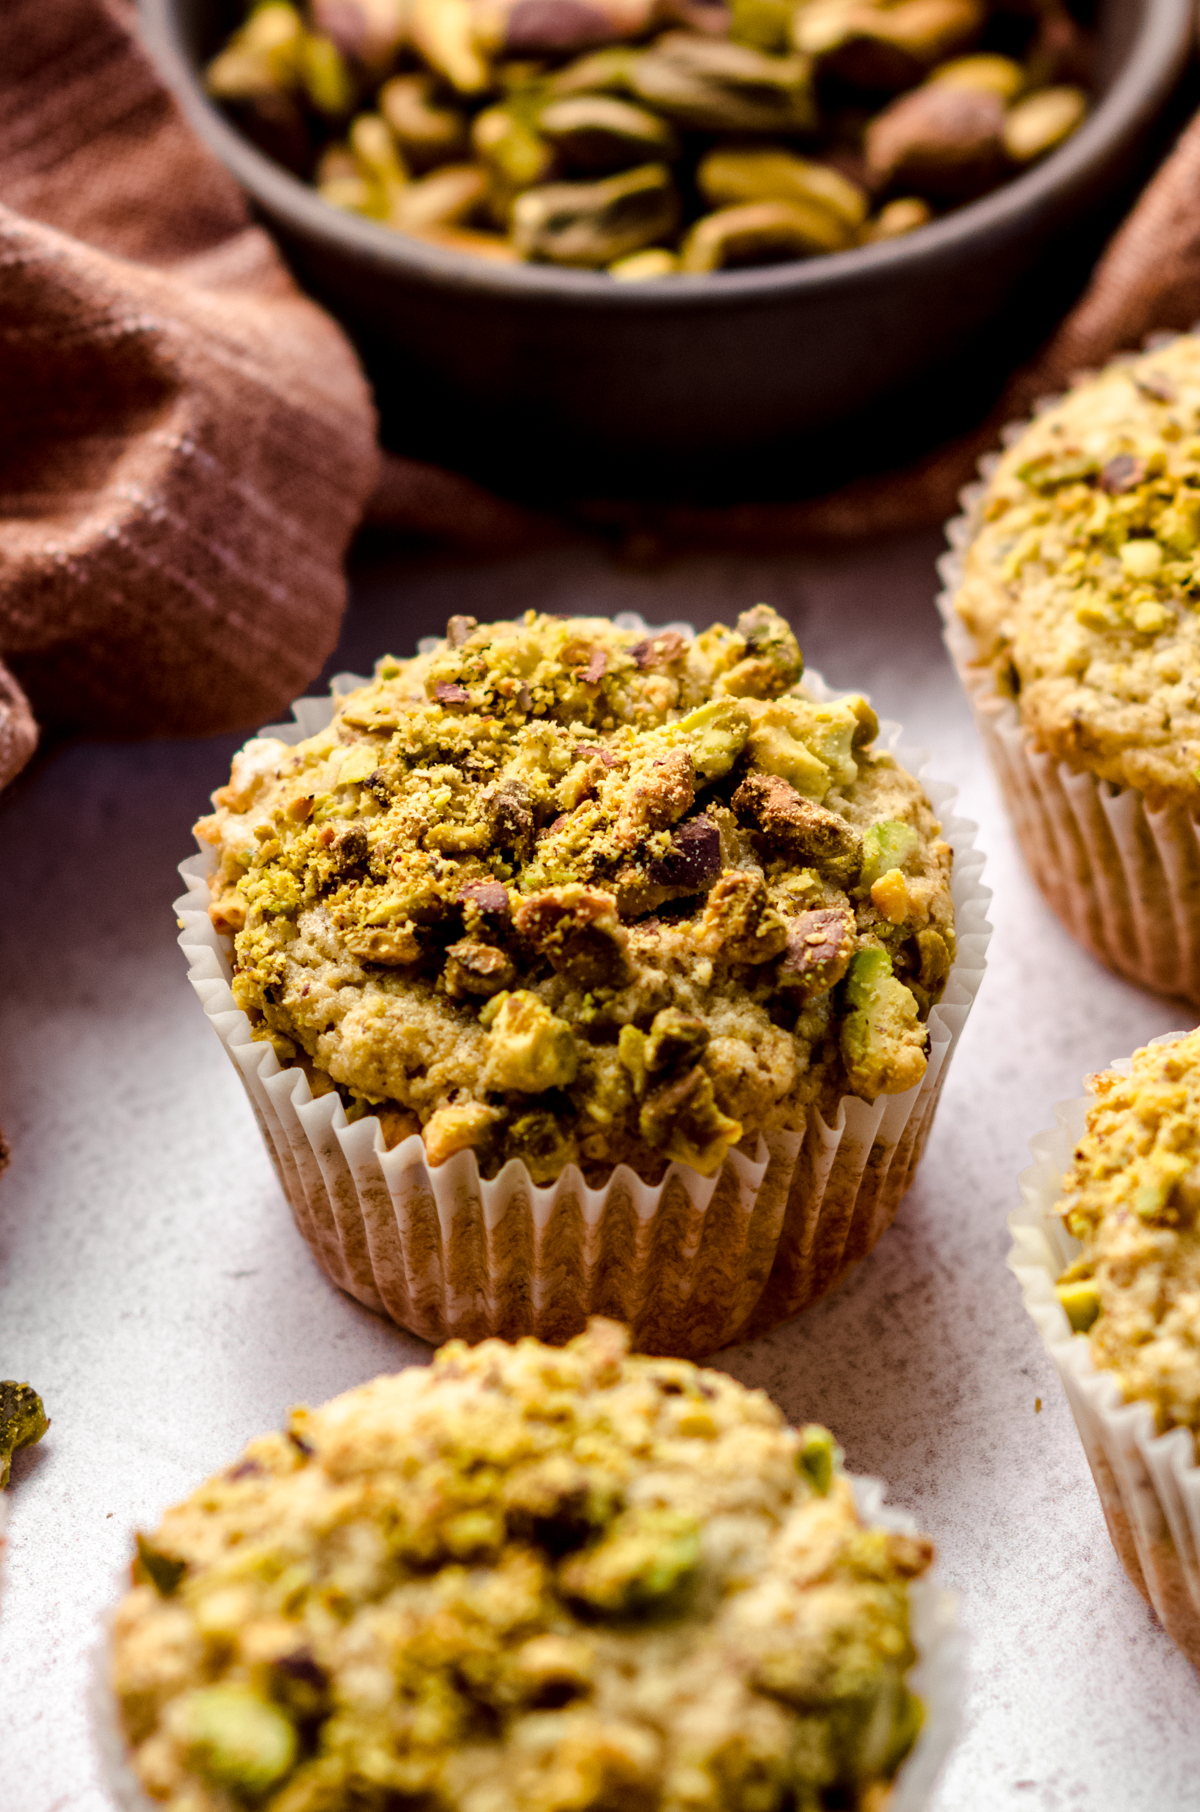 A closeup of a pistachio muffin.